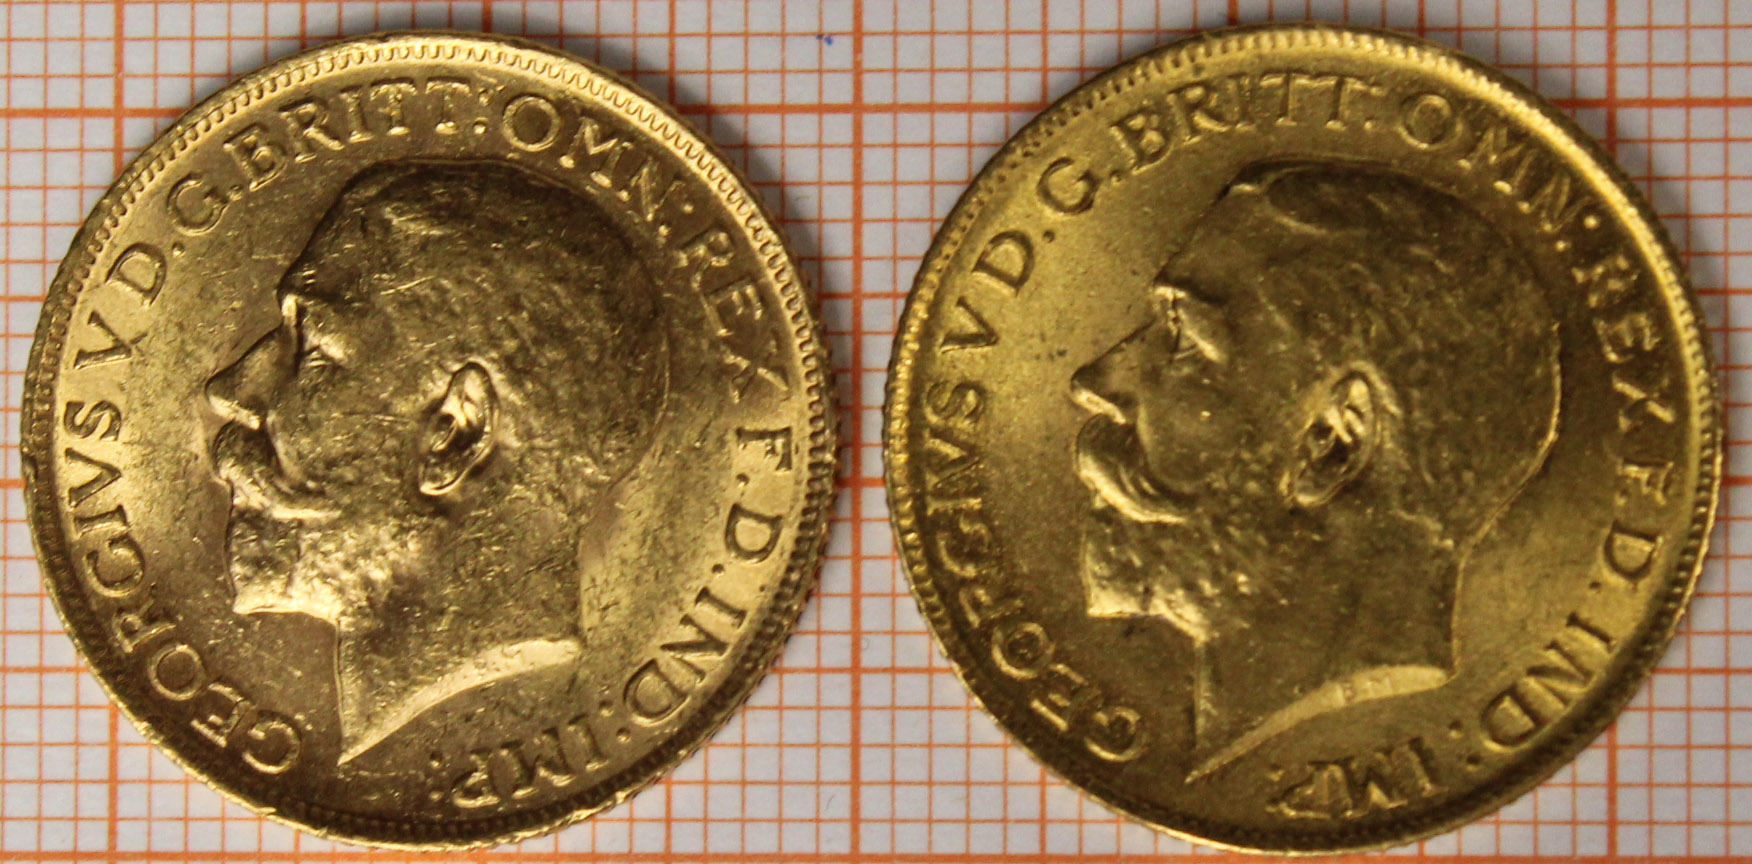 2x Sovereign Goldmünzen. 1914. - Bild 3 aus 4